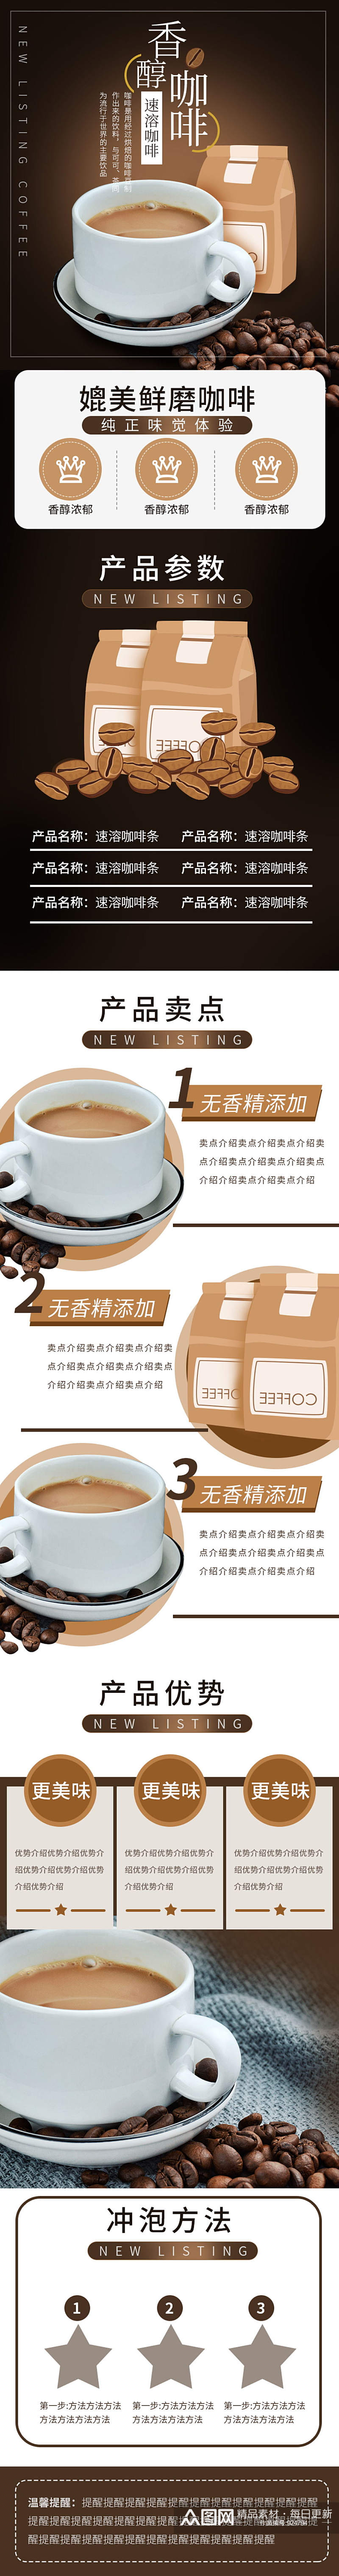 速溶咖啡详情页奶茶饮品电商淘宝素材